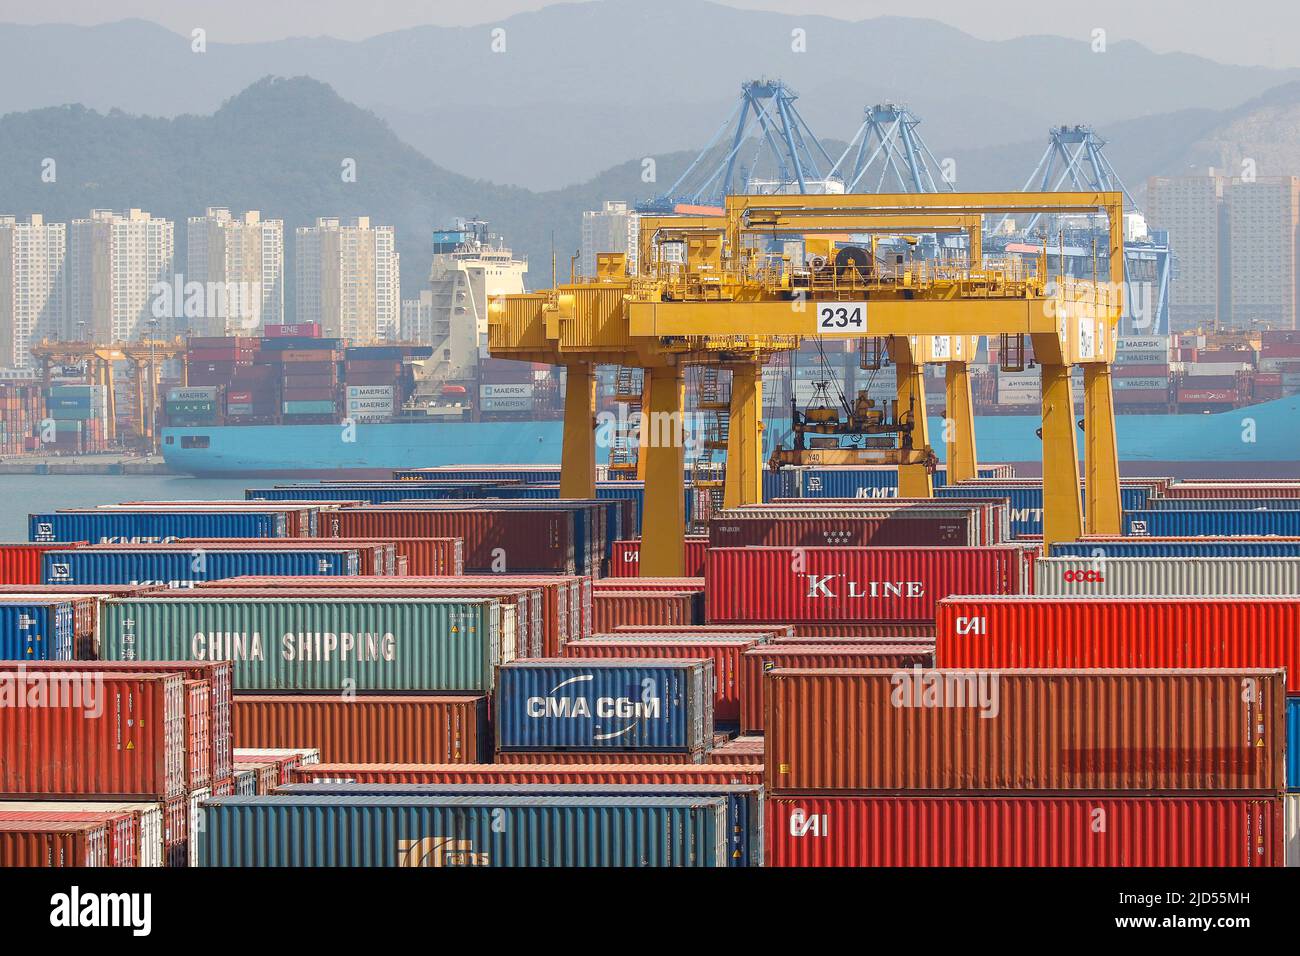 10. Juni 2020-Busan, Südkorea- Eine Szene des neuen Containerhafens in Busan, Südkorea die Wirtschaft Südkoreas wird in diesem Jahr voraussichtlich 1,2 Prozent einbrechen, da die Pandemie des Coronavirus und die Lockdown-Maßnahmen den globalen Handel und Konsum erschüttern, sagte die Organisation für wirtschaftliche Zusammenarbeit und Entwicklung (OECD) am Mittwoch. Die aktualisierte Prognose, die die schärfste Kontraktion seit der asiatischen Finanzkrise von 1998 sein würde, markierte eine drastische Herabstufung gegenüber der OECD-Prognose vom März mit einer Expansion von 2 Prozent. Die jüngste Prognose der OECD ist düsterer als eine Prognose der Bank of Korea (BOK), die f Stockfoto